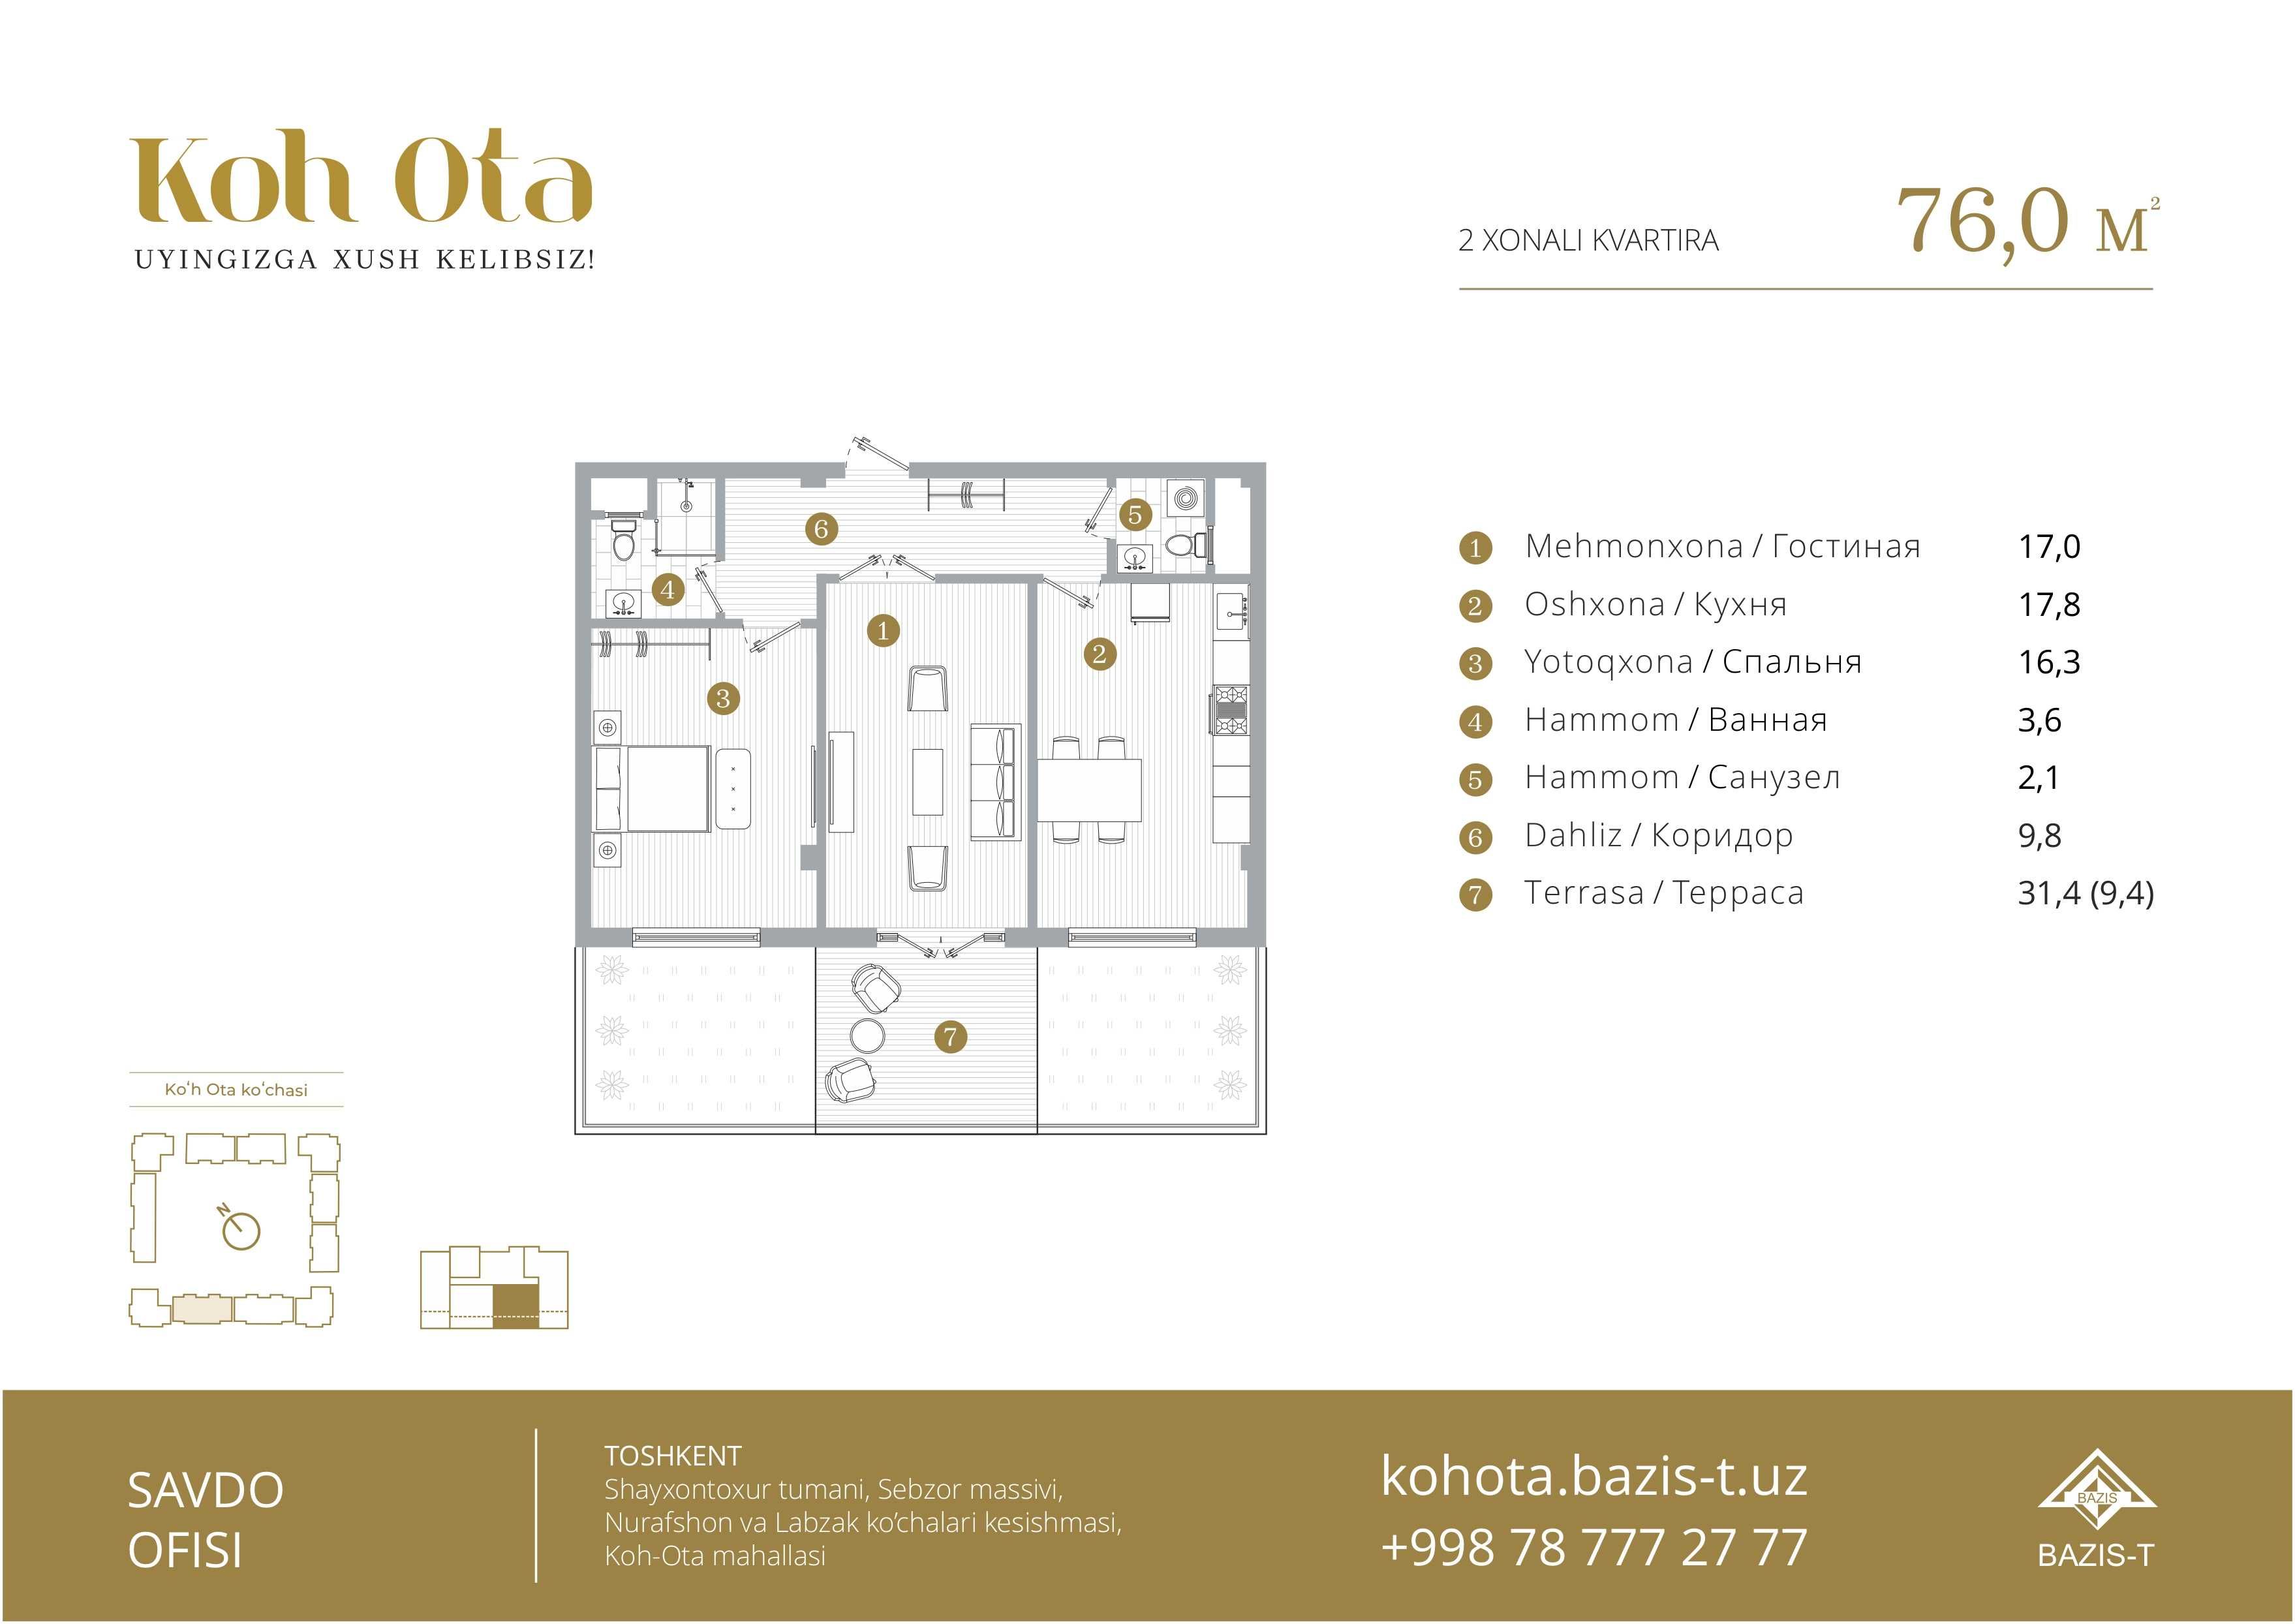 Продам квартиру Koh-ota 76kv + ТЕРАССА в подарок CITY HOUSE квартира